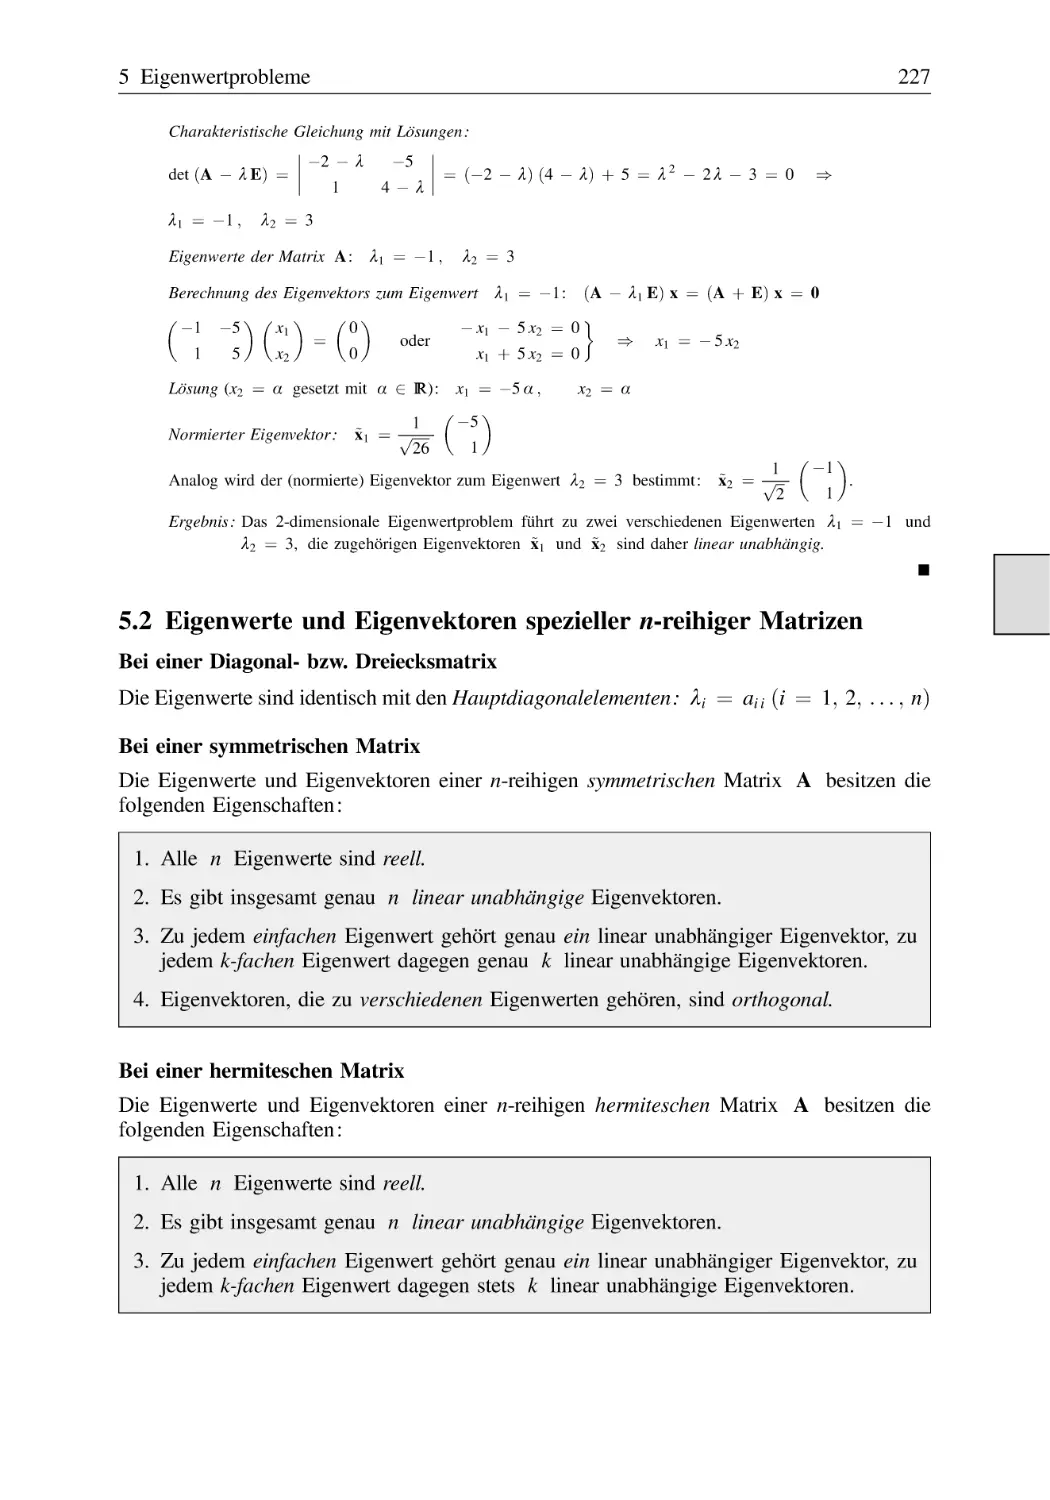 5.2 Eigenwerte und Eigenvektoren spezieller n-reihiger Matrizen